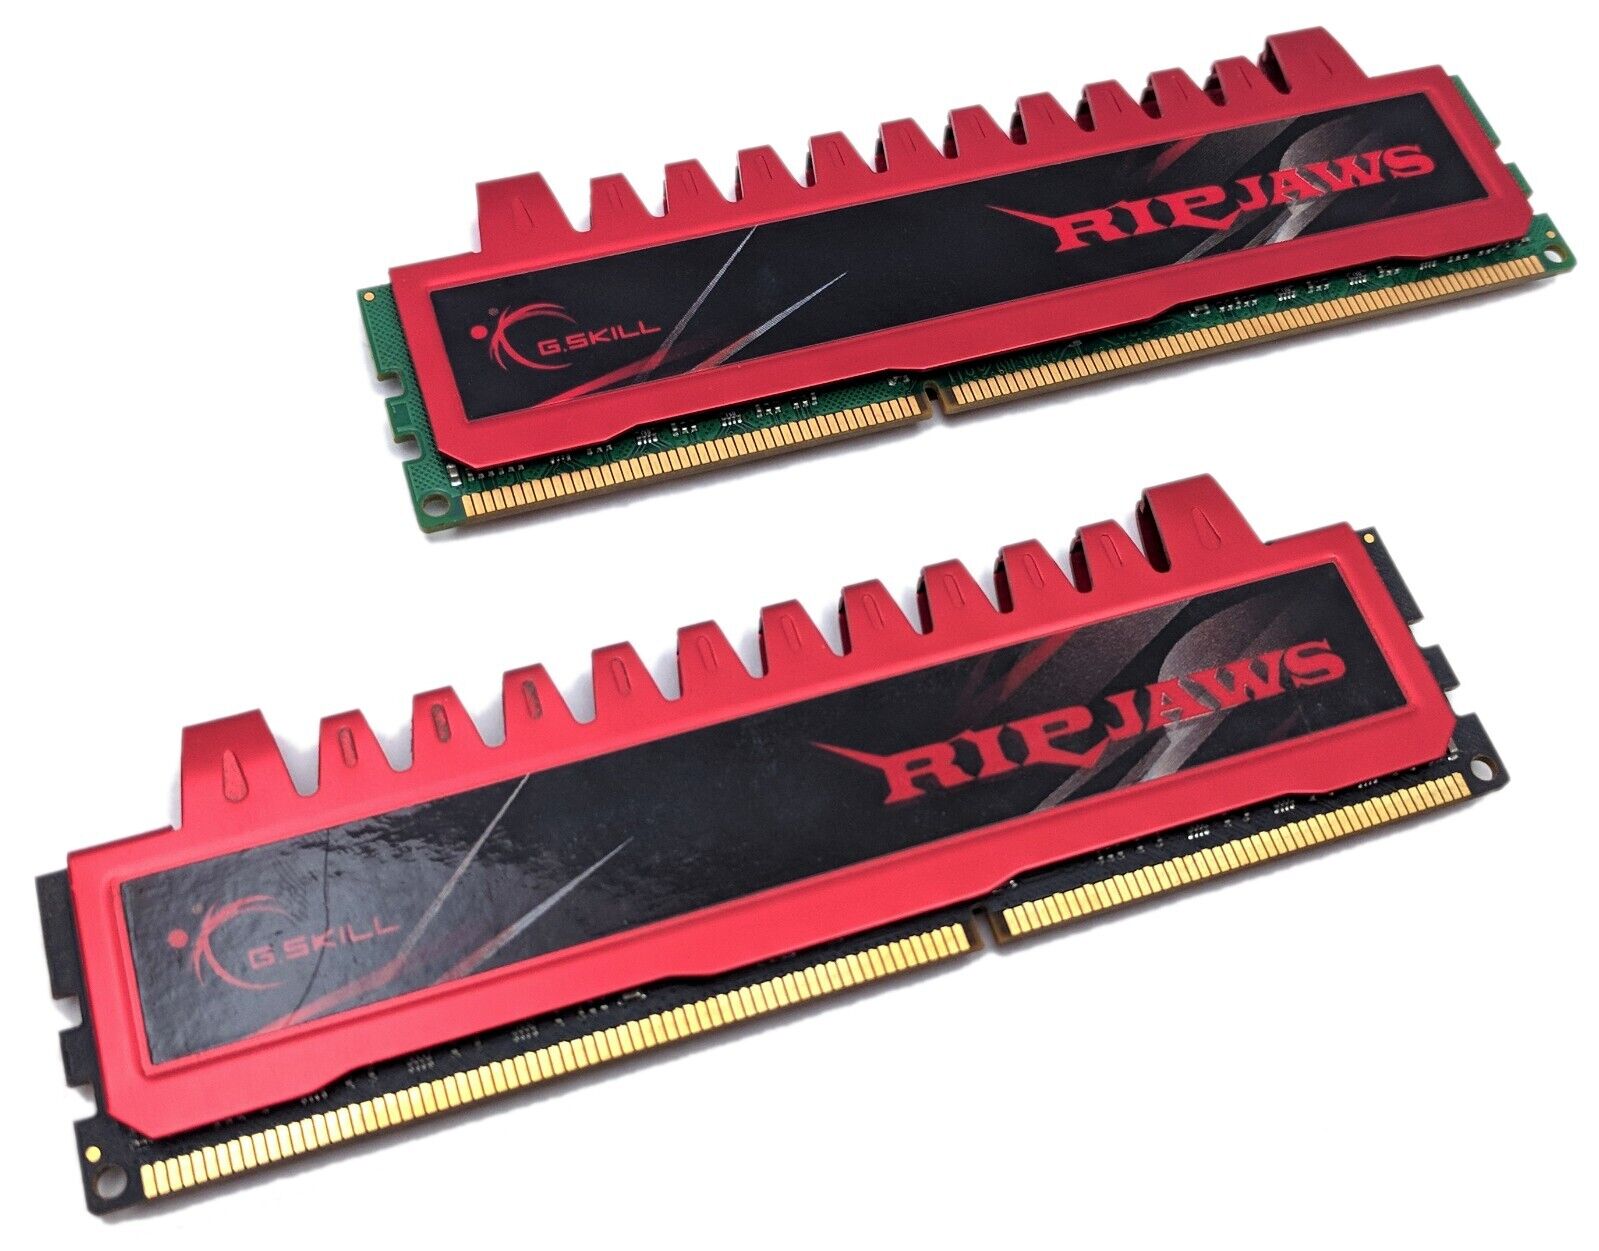 G.Skill Ripjaws 4GB Kit (2x2GB) PC3-12800 DDR3-1600 DIMM RAM F3-12800CL9D-4GBRL